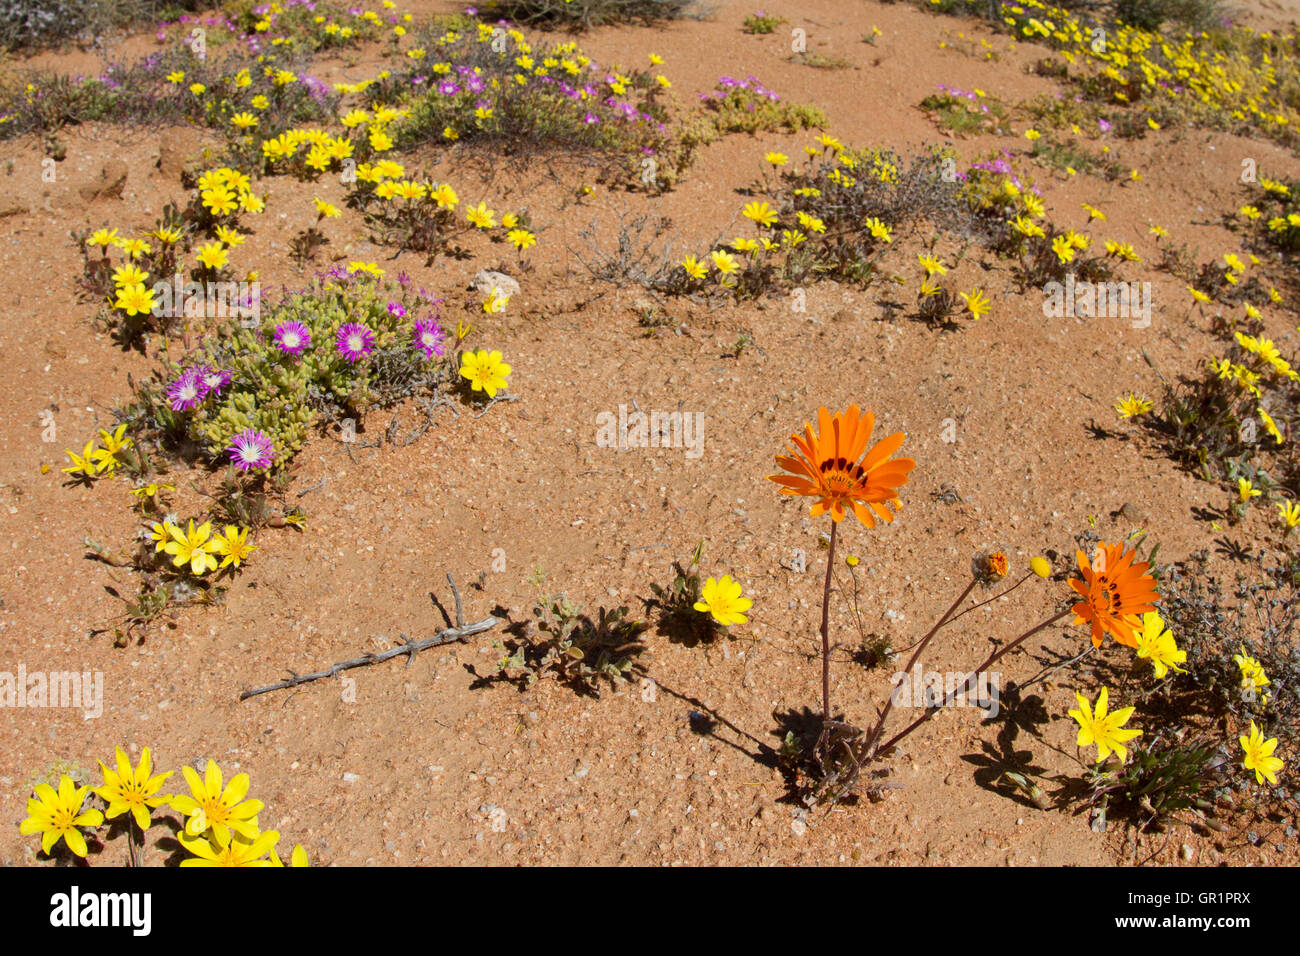 Wüste blüht: Blumen nach Regenfällen in der Karoo Wüste, Namaqualand, Südafrika Stockfoto